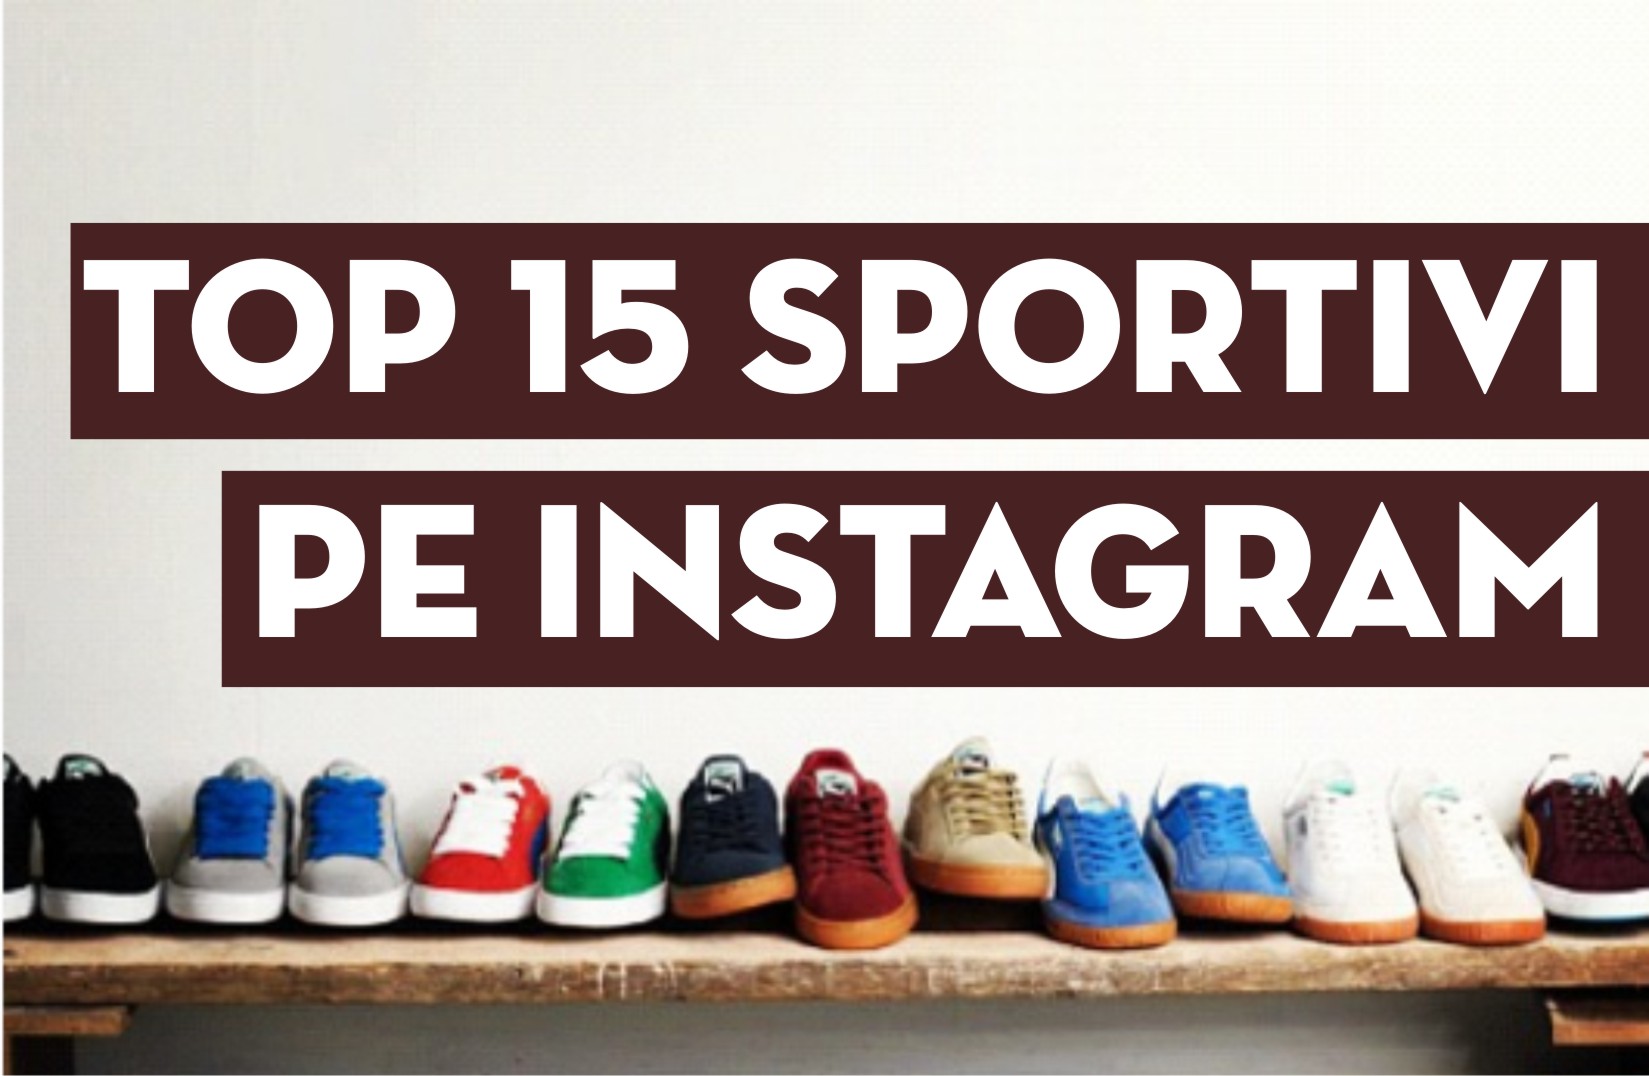 Ce sportivi merită urmăriţi pe Instagram?